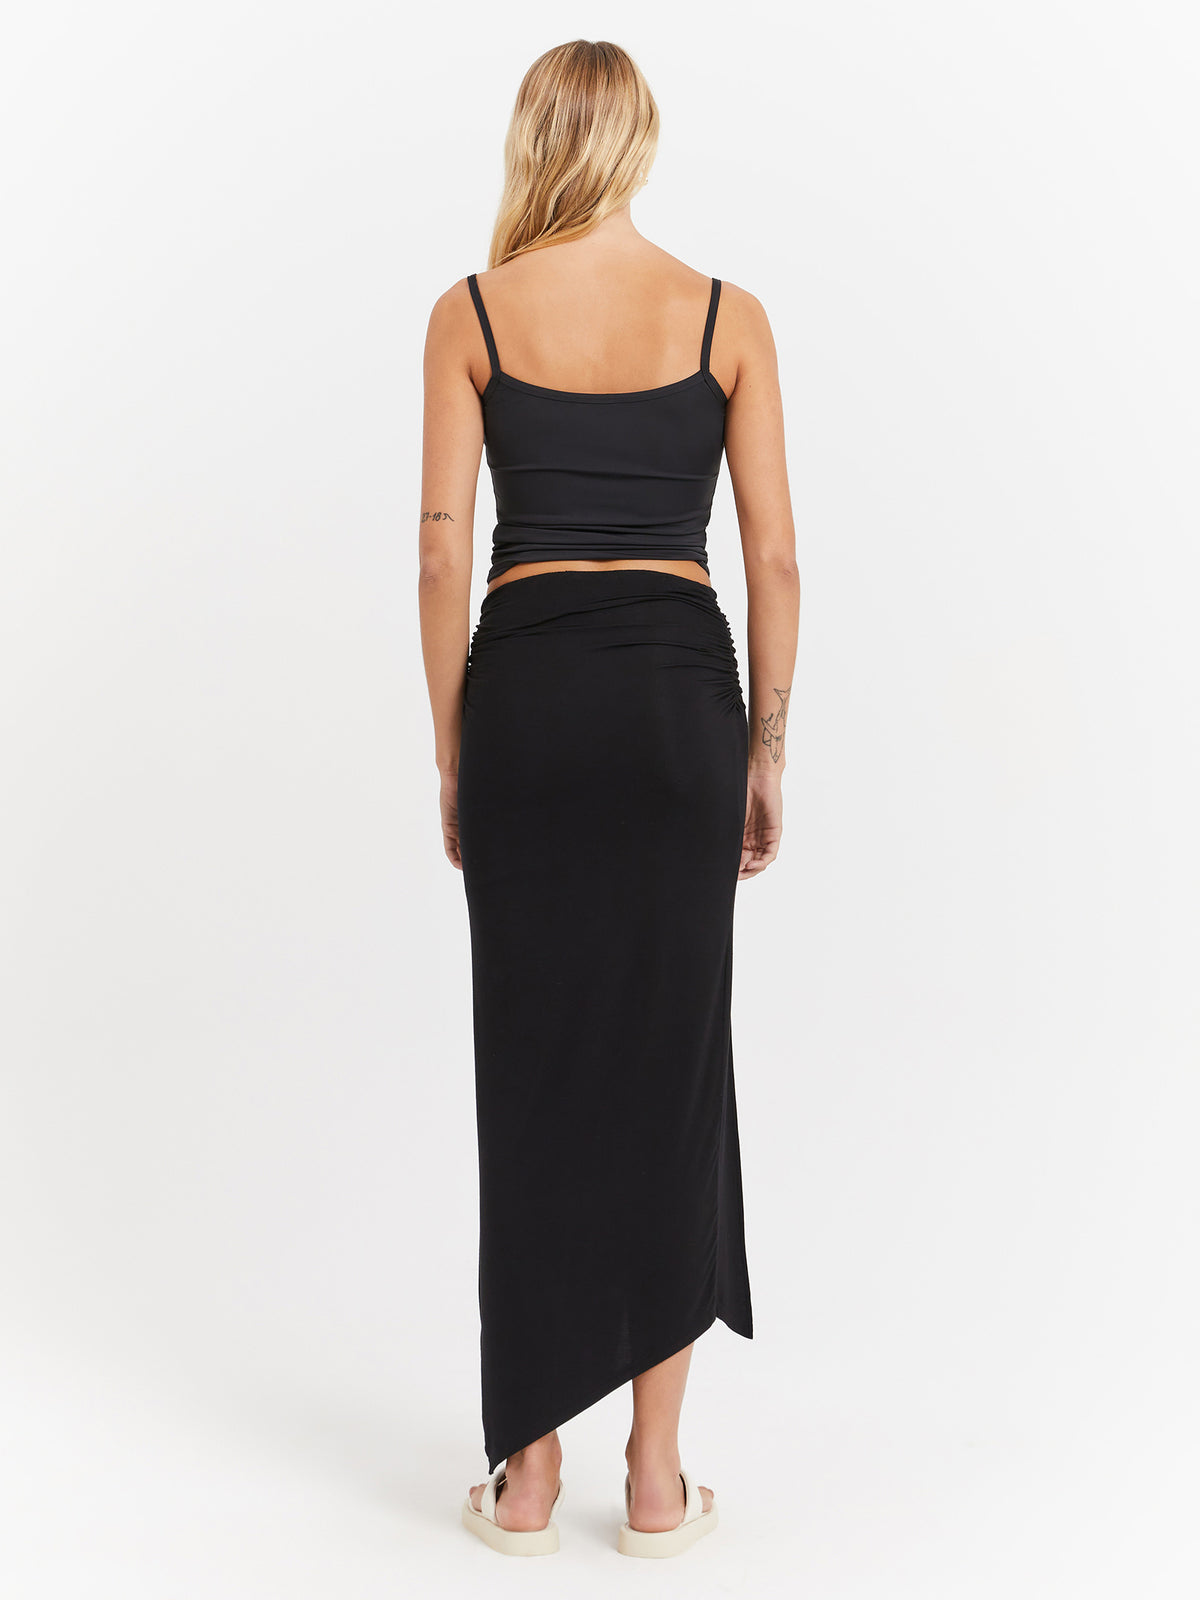 Miko Asymmetrical Skirt in Black